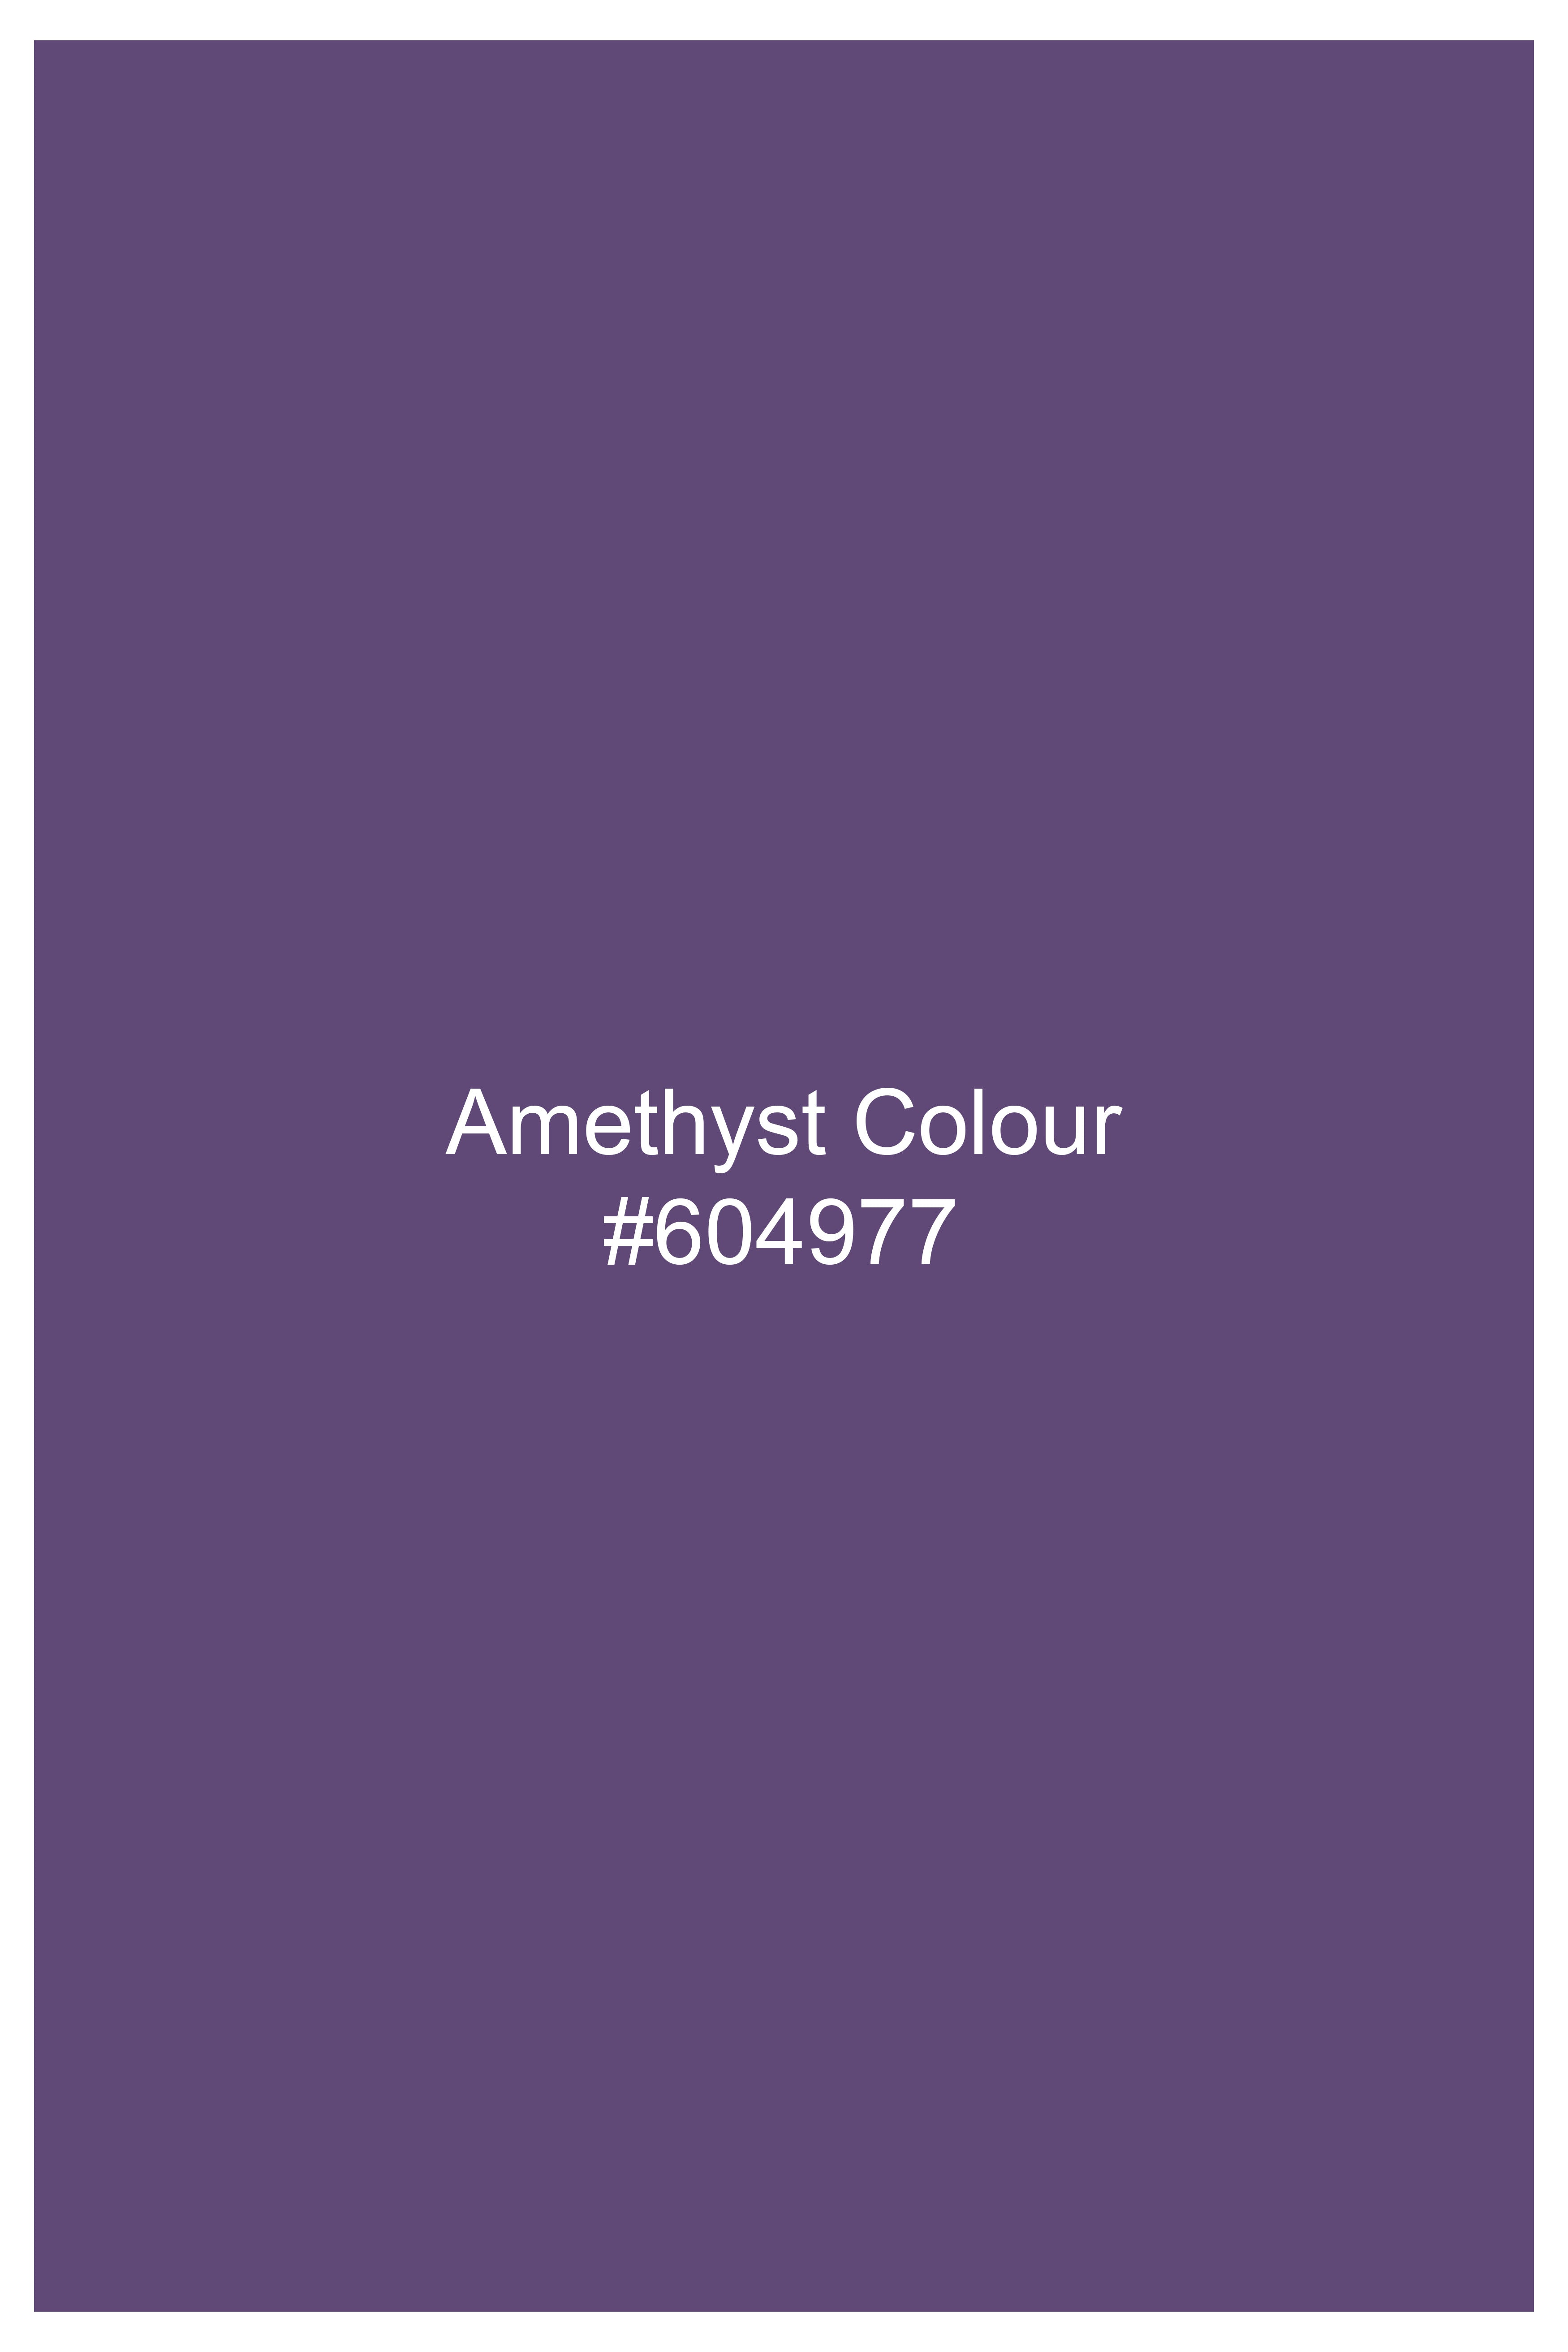 Amethyst Purple Single Breasted Blazer BL3007-SB-36, BL3007-SB-38, BL3007-SB-40, BL3007-SB-42, BL3007-SB-44, BL3007-SB-46, BL3007-SB-48, BL3007-SB-50, BL3007-SB-52, BL3007-SB-54, BL3007-SB-56, BL3007-SB-58, BL3007-SB-60